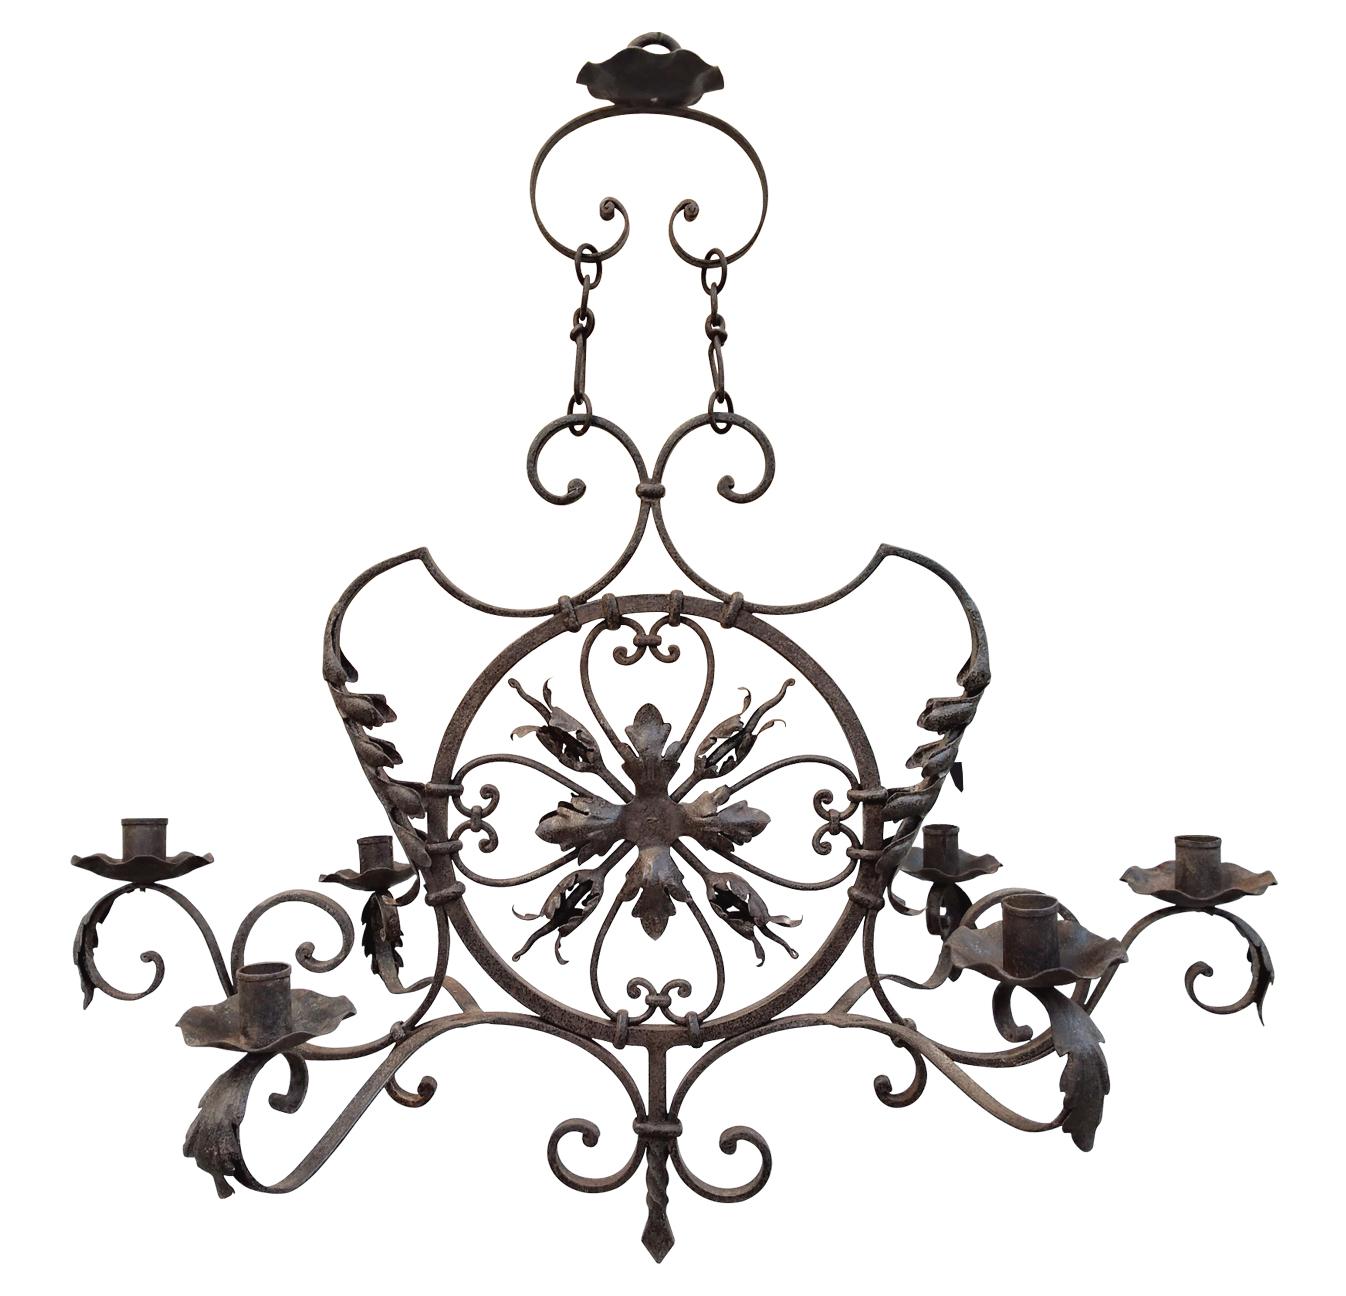 Großer dekorativer Kronleuchter aus Schmiedeeisen, Ende 19. Jahrhundert. Geschmiedet in Frankreich, um 1890, kann der große Kronleuchter 6 Kerzen aufnehmen (Kerzen nicht mitgeliefert). Der Kronleuchter ist mit Blättern und Blumen aus geschmiedetem